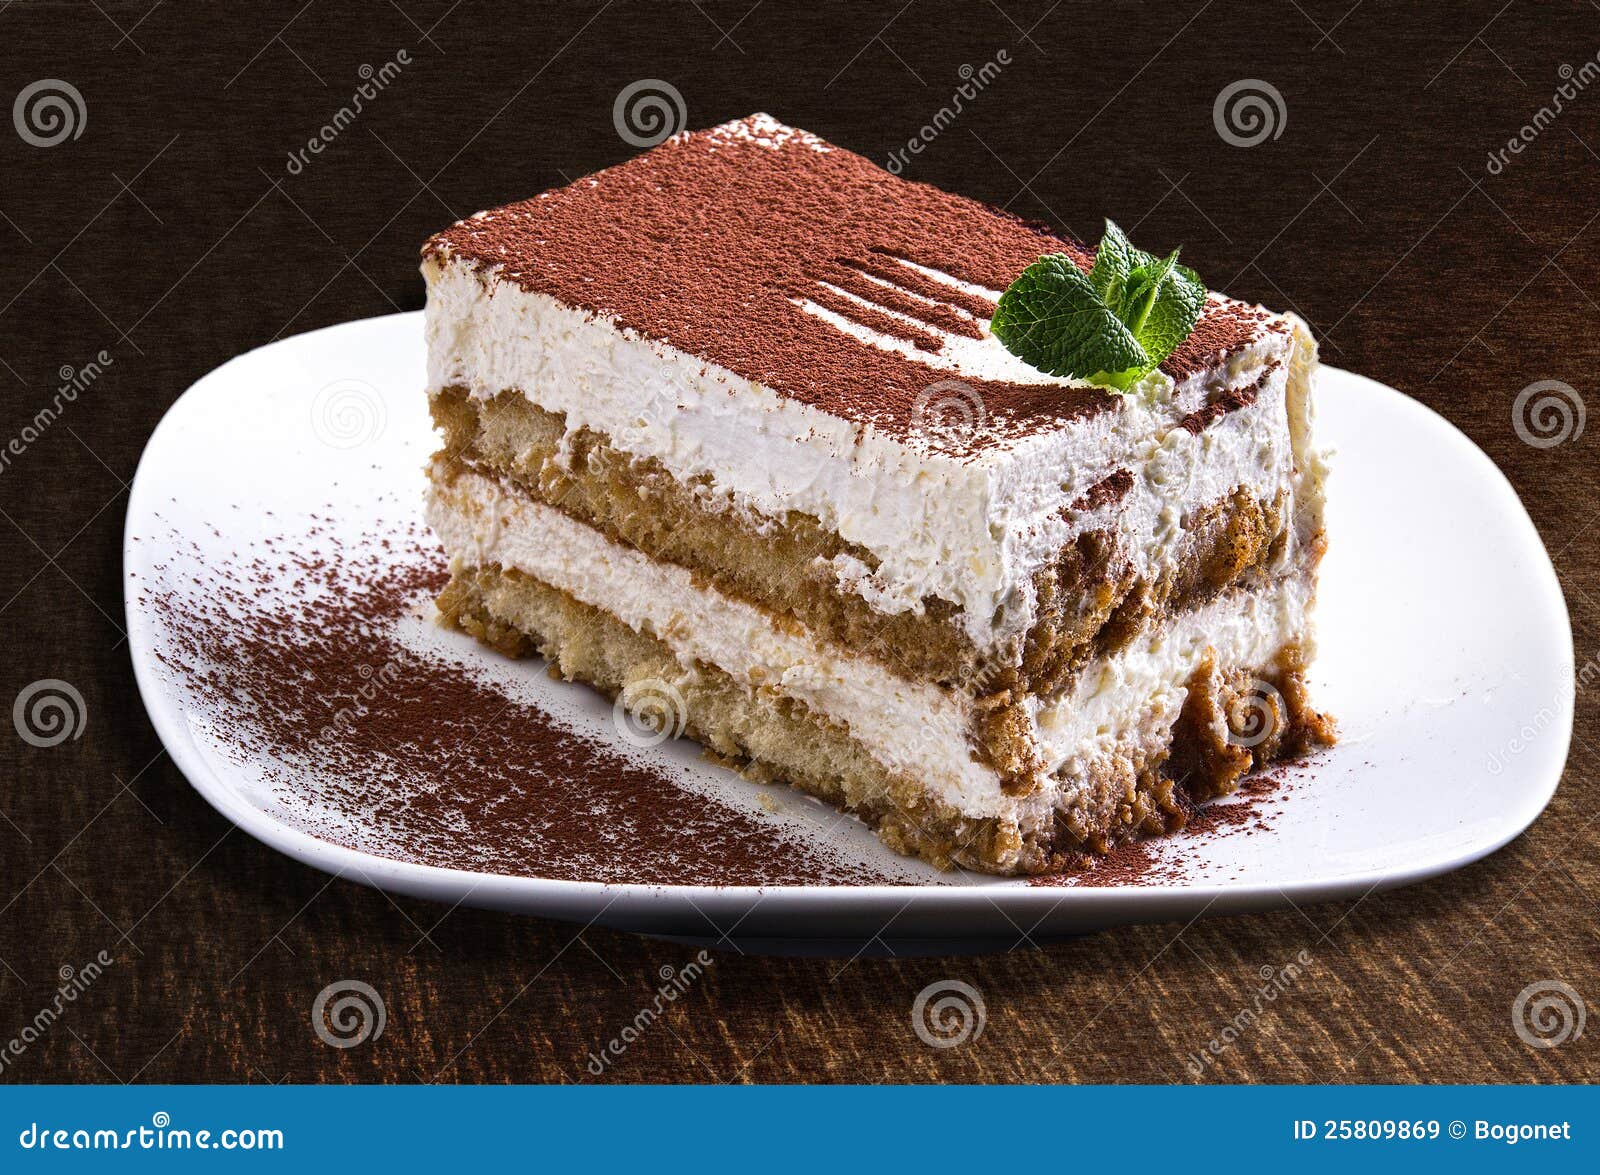 cup cake cup s cake cake cake tiramisu tiramisu tiramisu tiramisu s fauzia  fauzia tiramisu